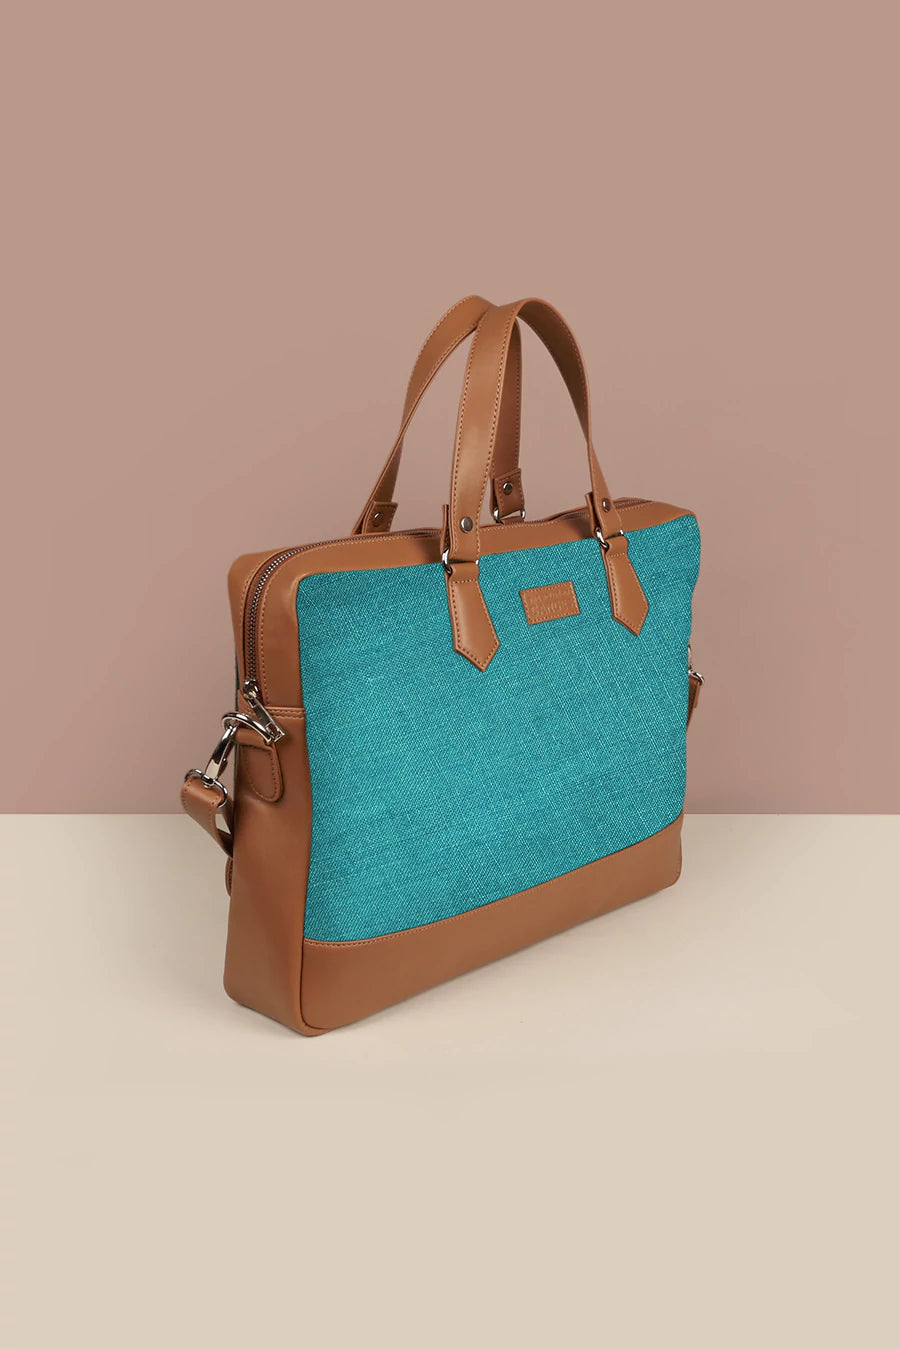 Kara Ross Bags & Handbags for Women for sale | eBay